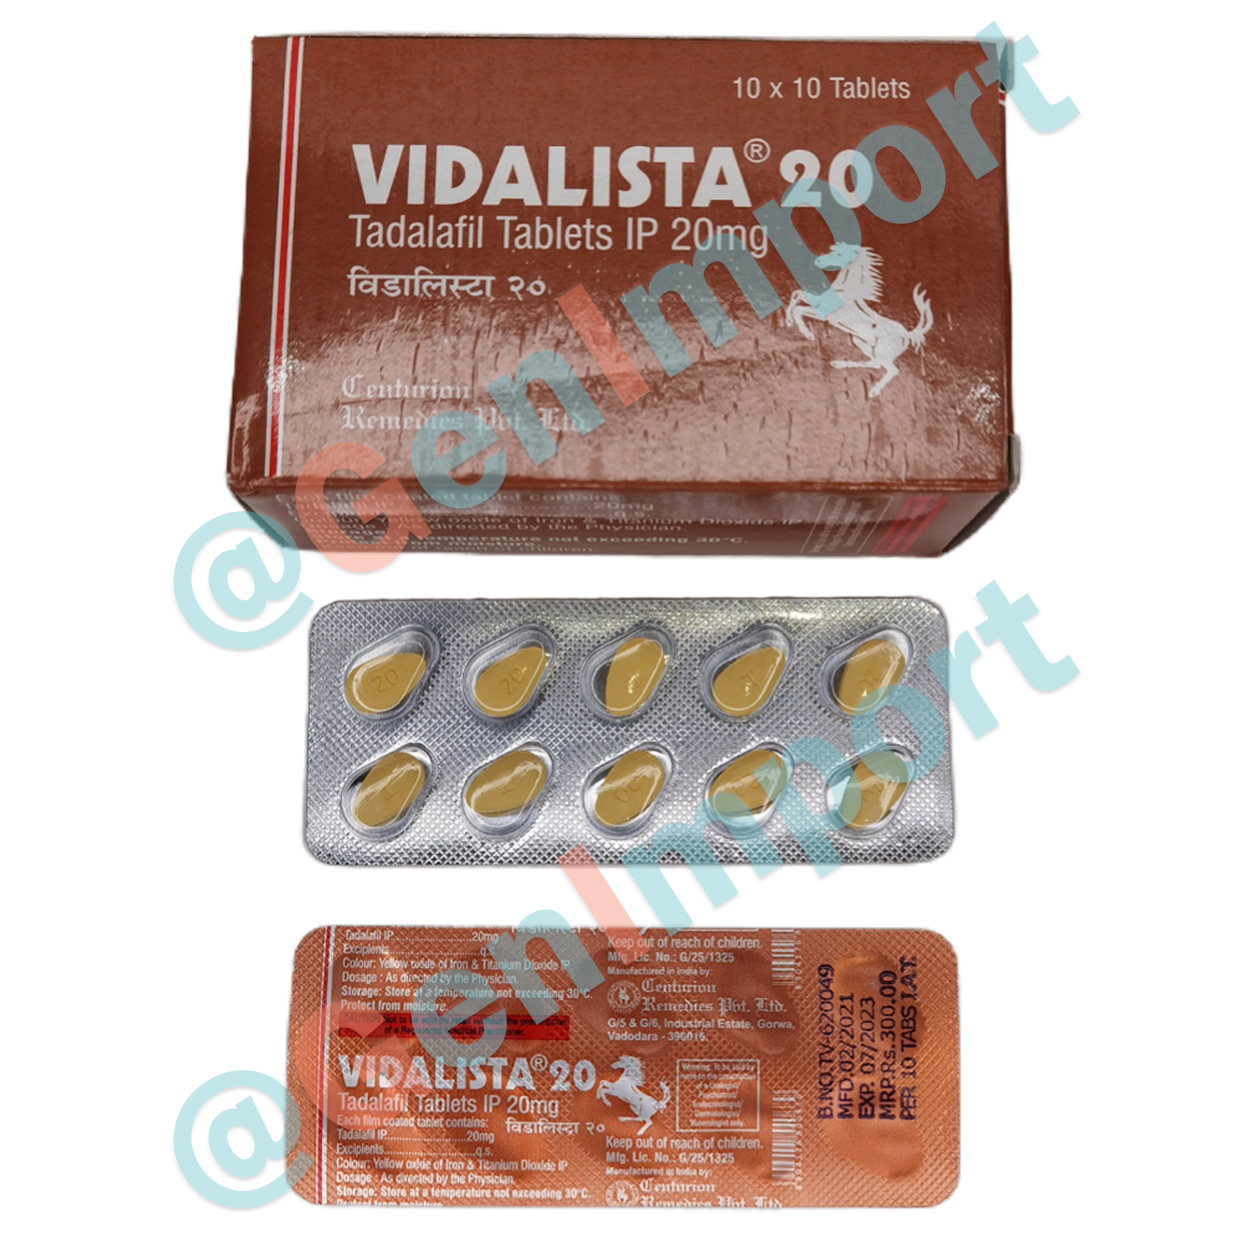 Vidalista Видалиста 20, аналог сиалиса (тадалафил, tadalafil)